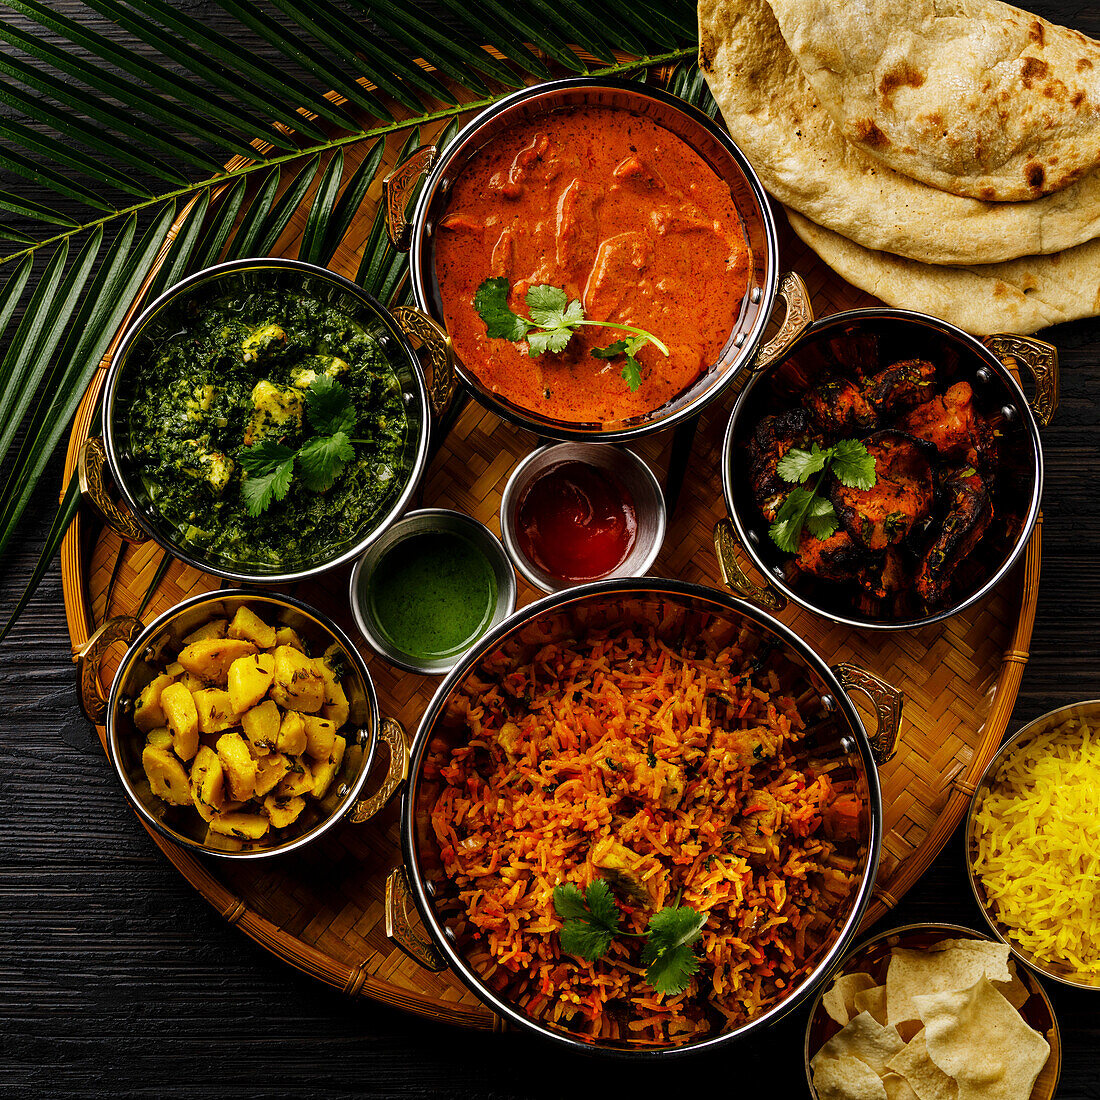 Indisches Essen Curry-Butterhähnchen, Palak Paneer, Chiken Tikka, Biryani, Gemüsecurry, Papad, Dal, Palak Sabji, Jira Alu, Reis mit Safran auf dunklem Hintergrund